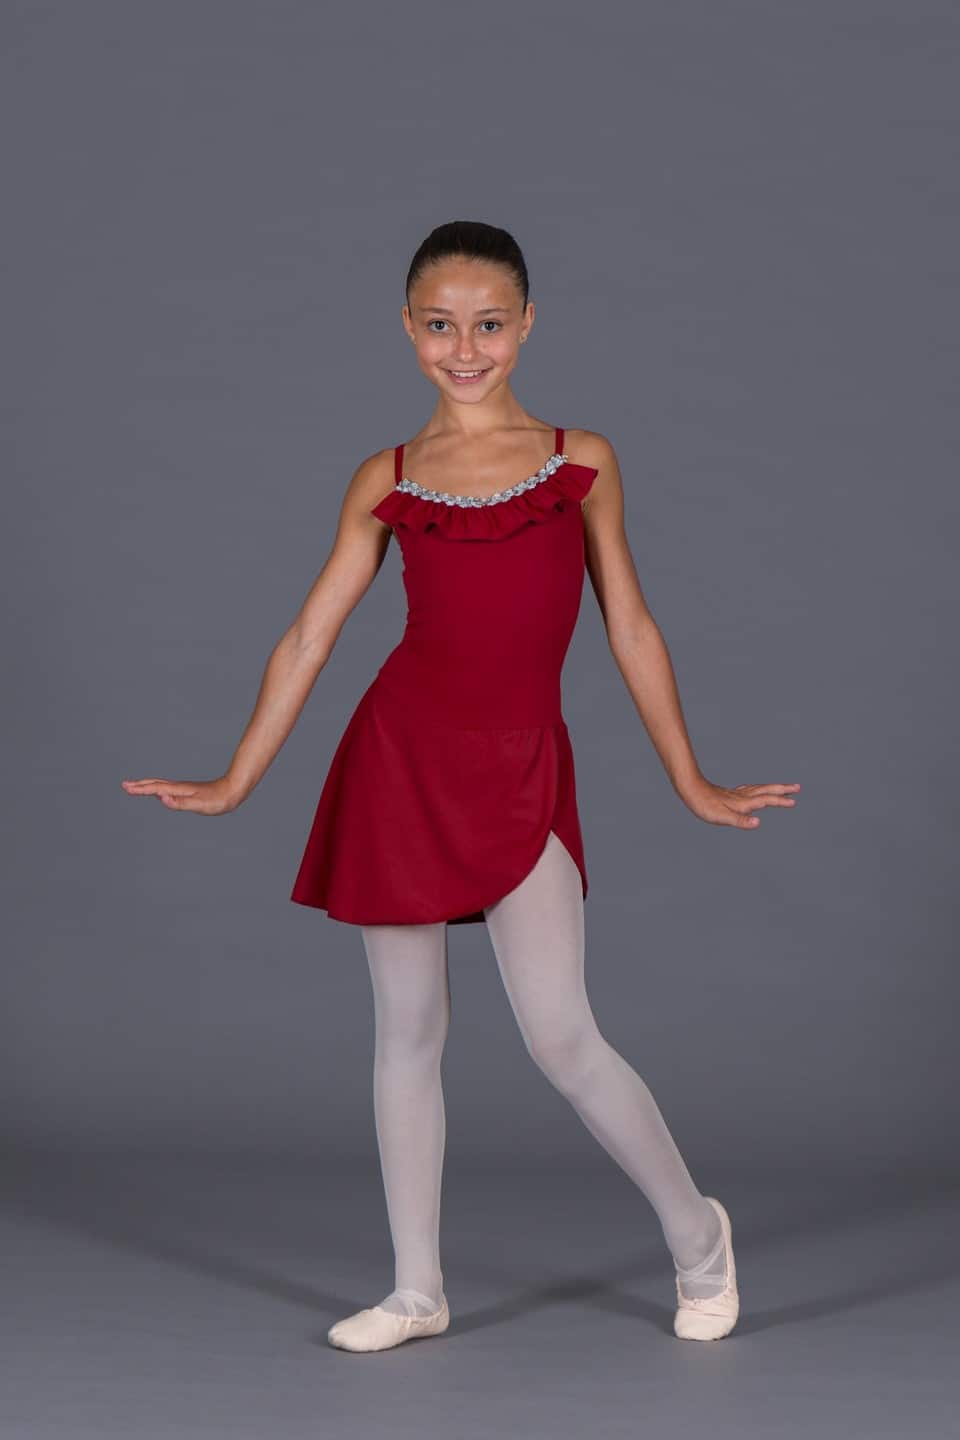 PLIKSUVER Ragazze Body Danza Vestito da Balletto Balletto Leotard Tutu Body per Danza lungo breve corto per Bambina Ragazza Rosa Nero